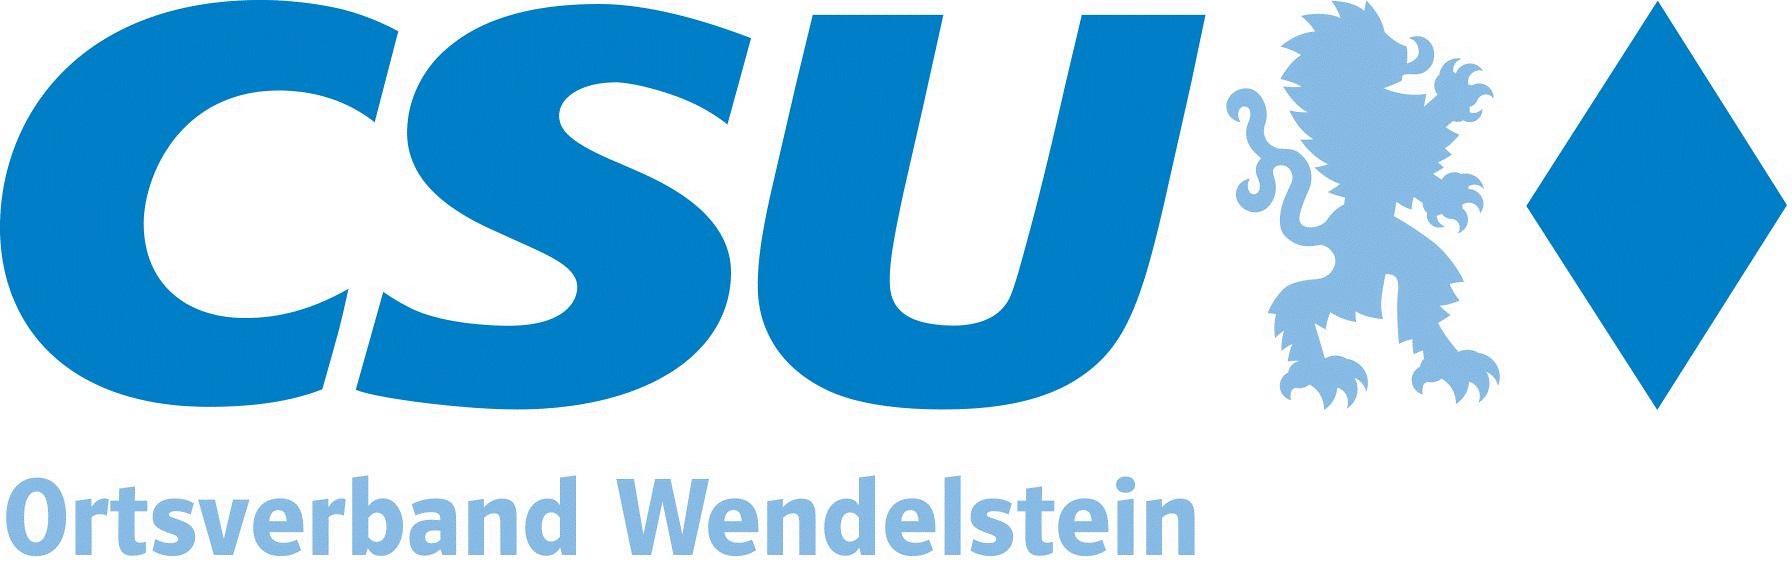 CSU-Ortsverband Wendelstein